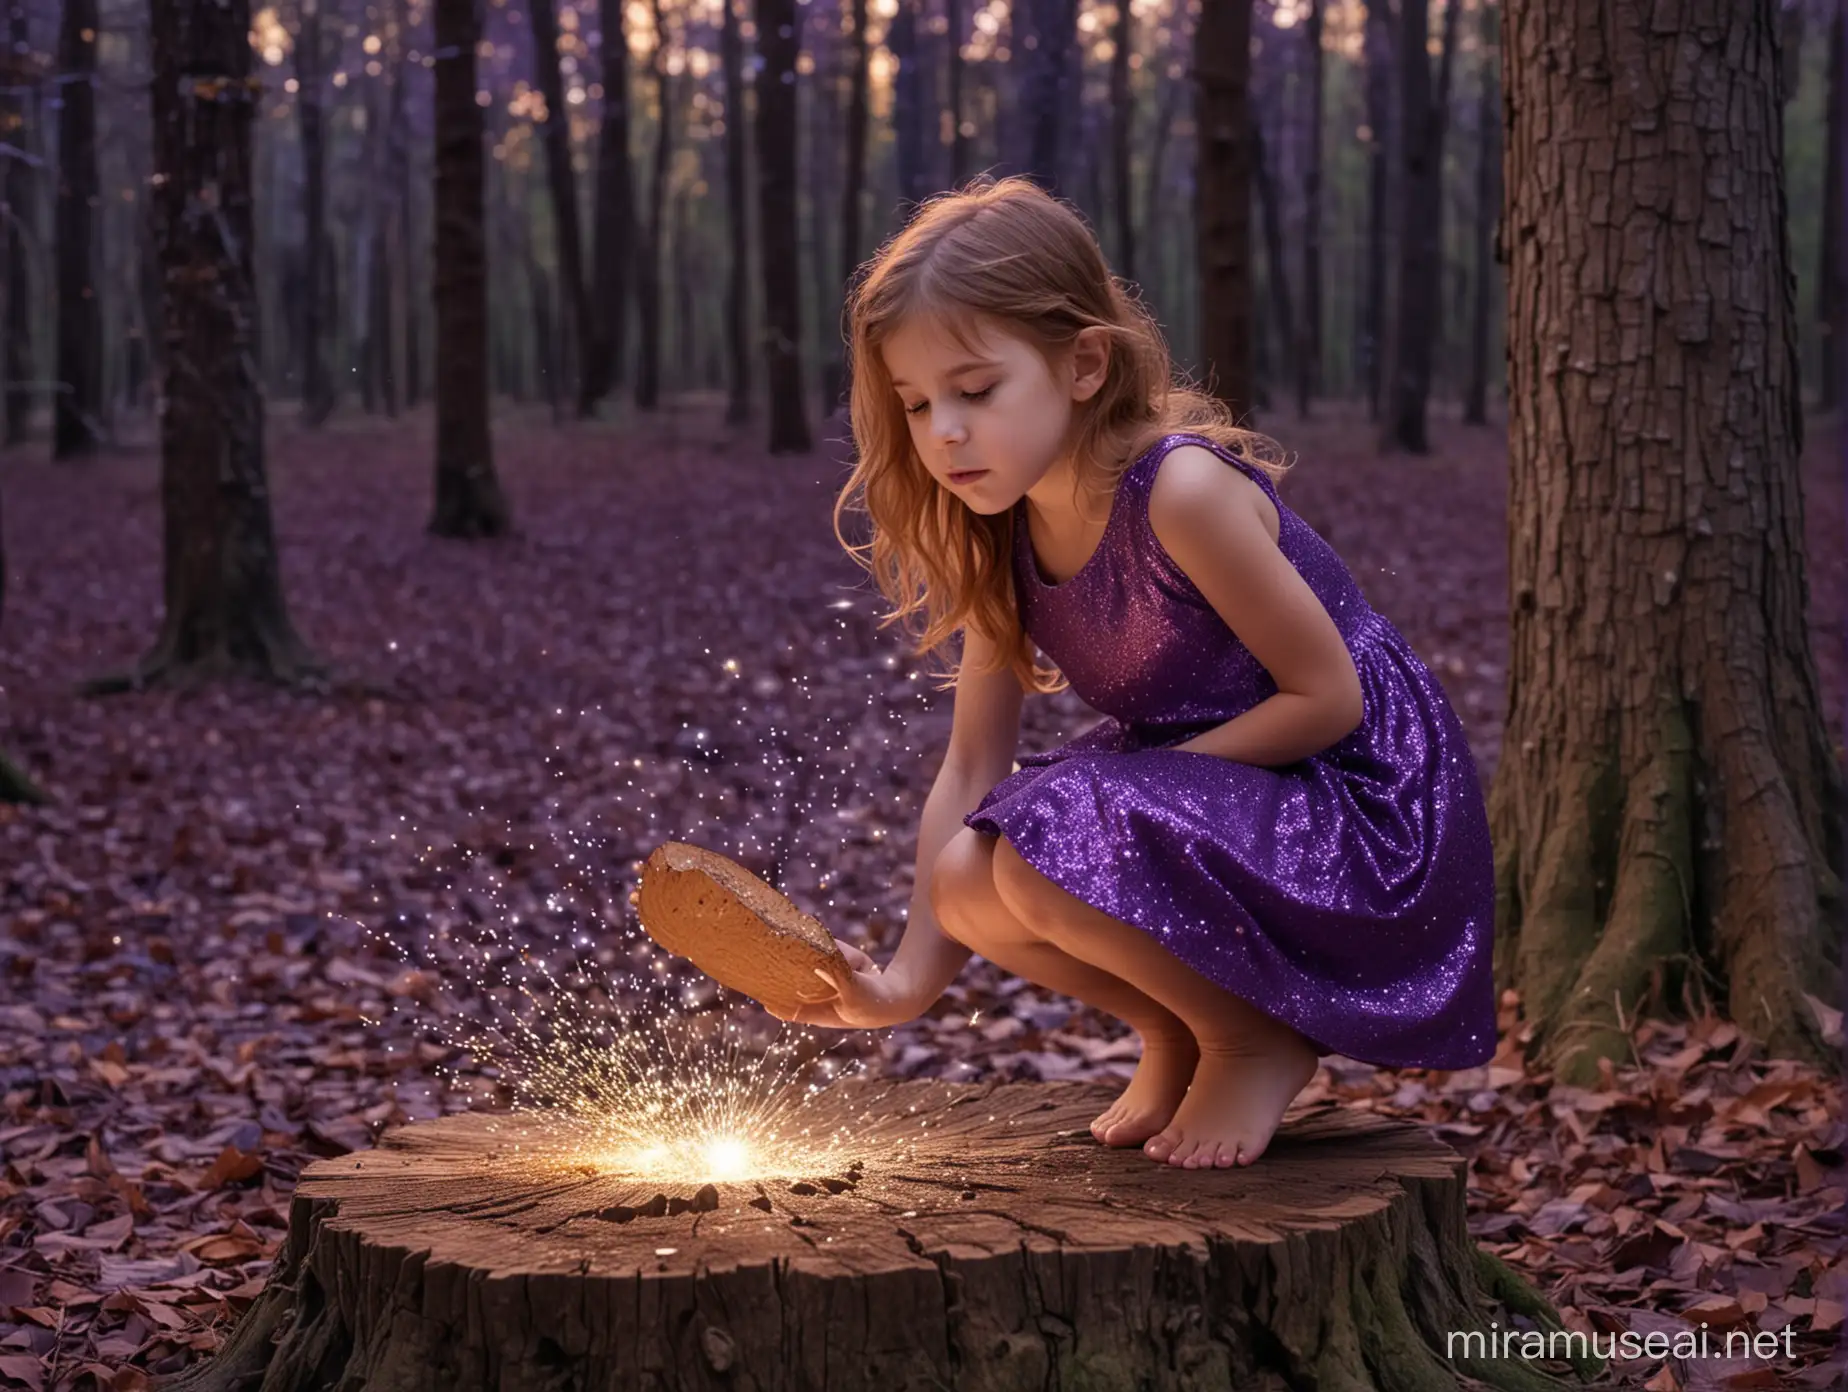 petite fille cheveux chatain accroupie dans une forêt magique avec des paillettes qui volent. Elle porte une robe violette sans manche. Elle regarde dans une souche. La nuit est lunineuse.